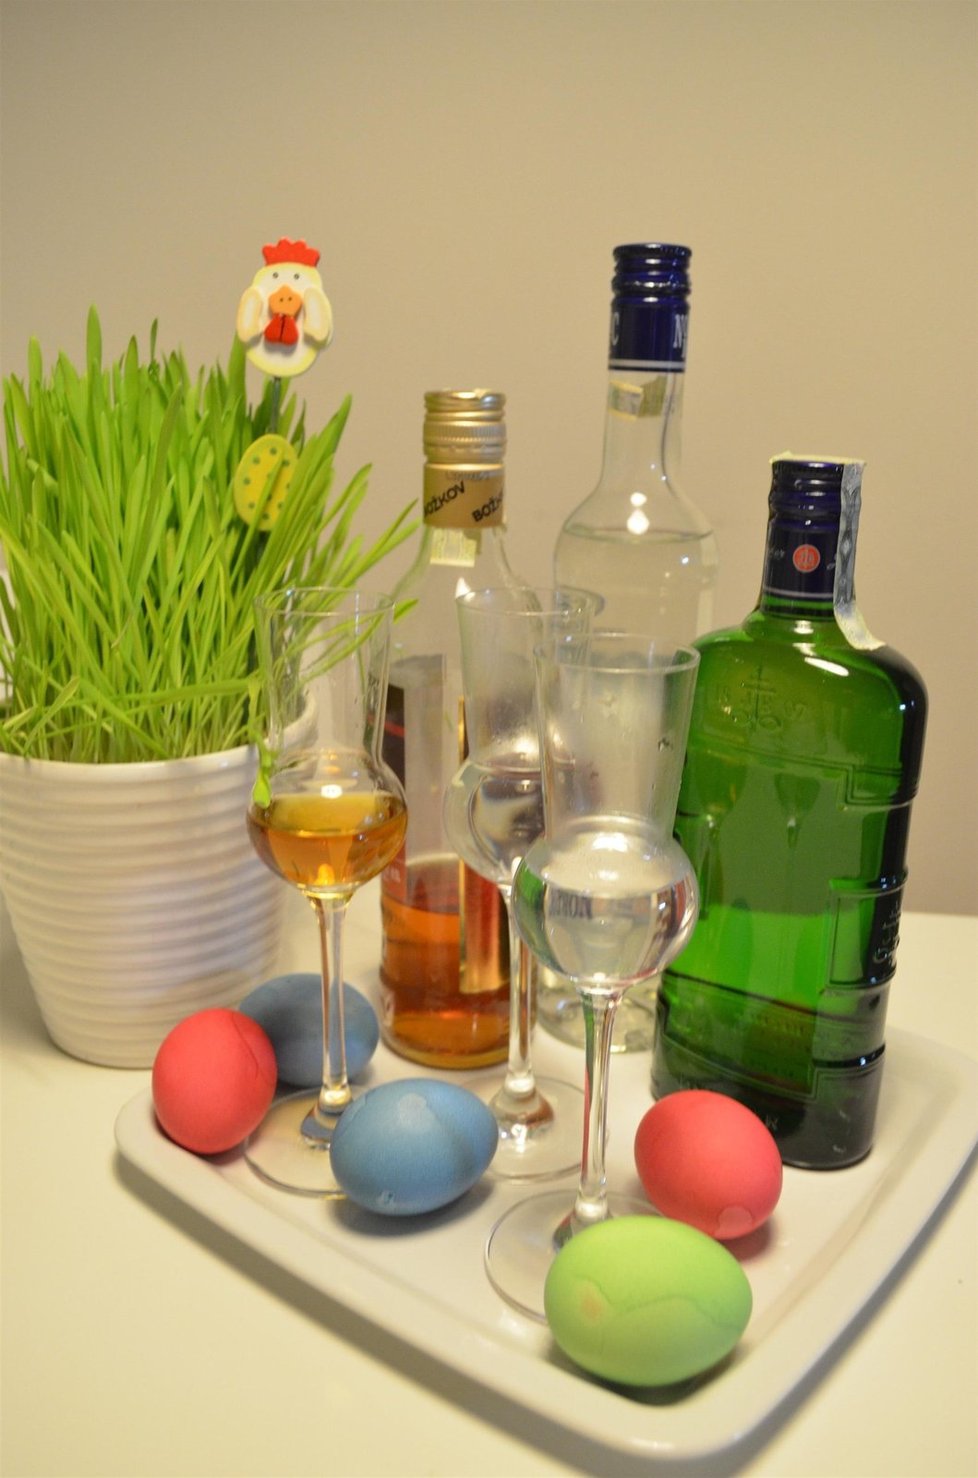 Průměrný Čech koupí na Velikonoce alkohol za 300 korun.